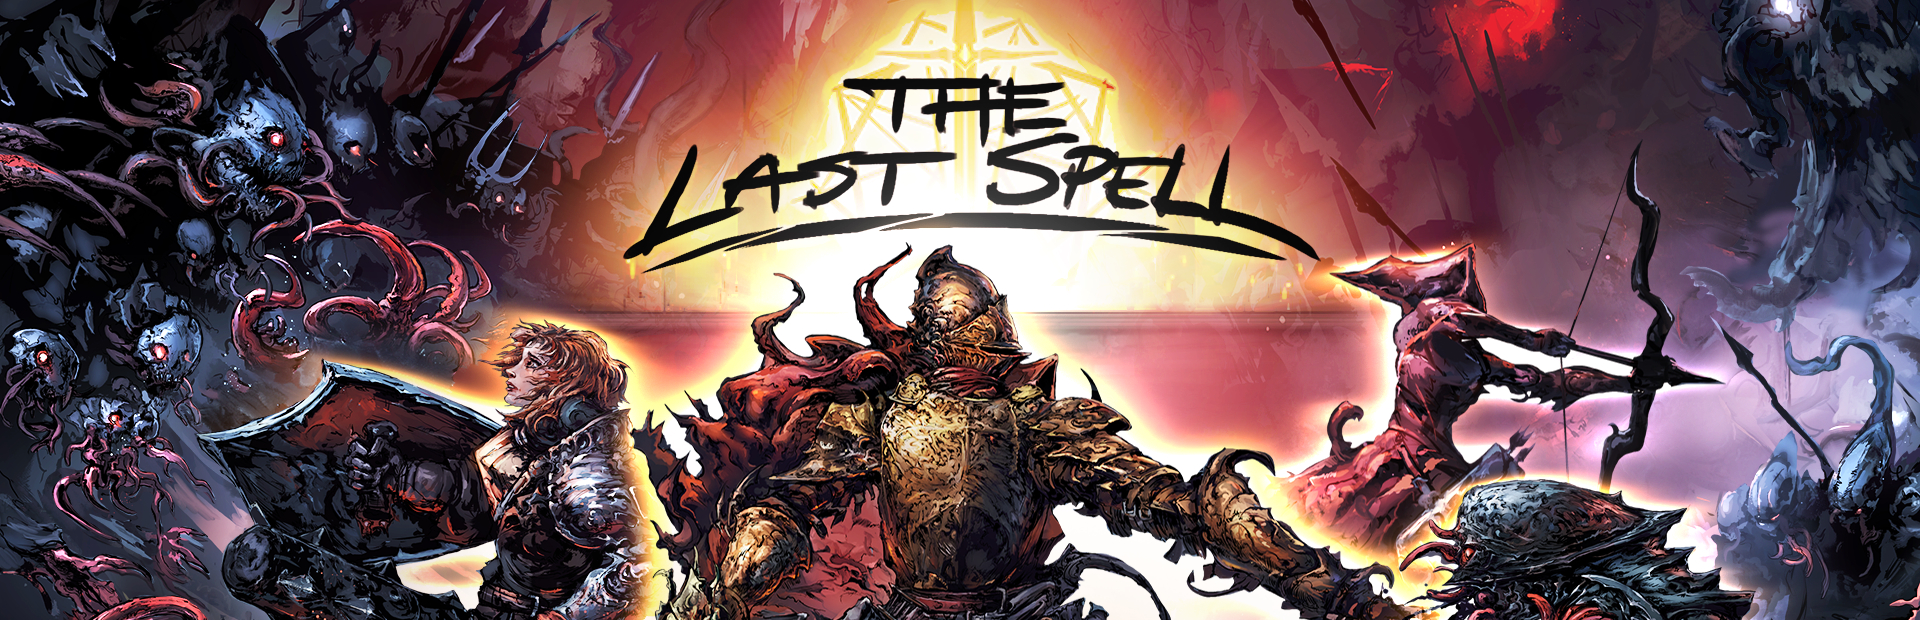 دانلود بازی The Last Spell برای پی سی | گیمباتو